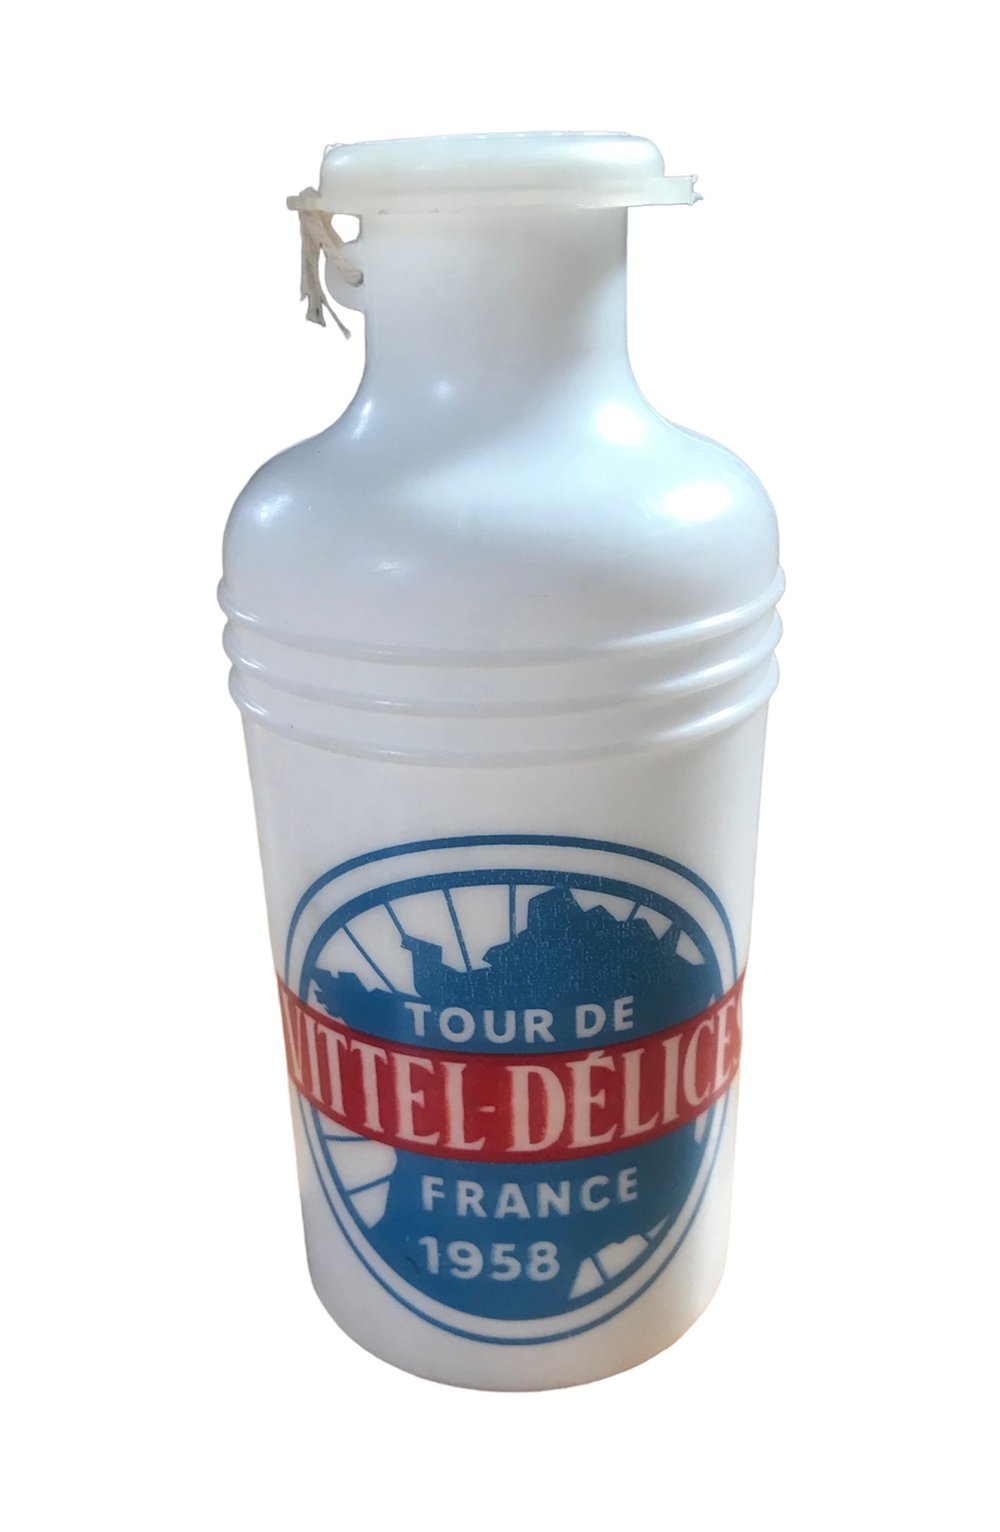 1958 - Tour de France - La Vitelloise 